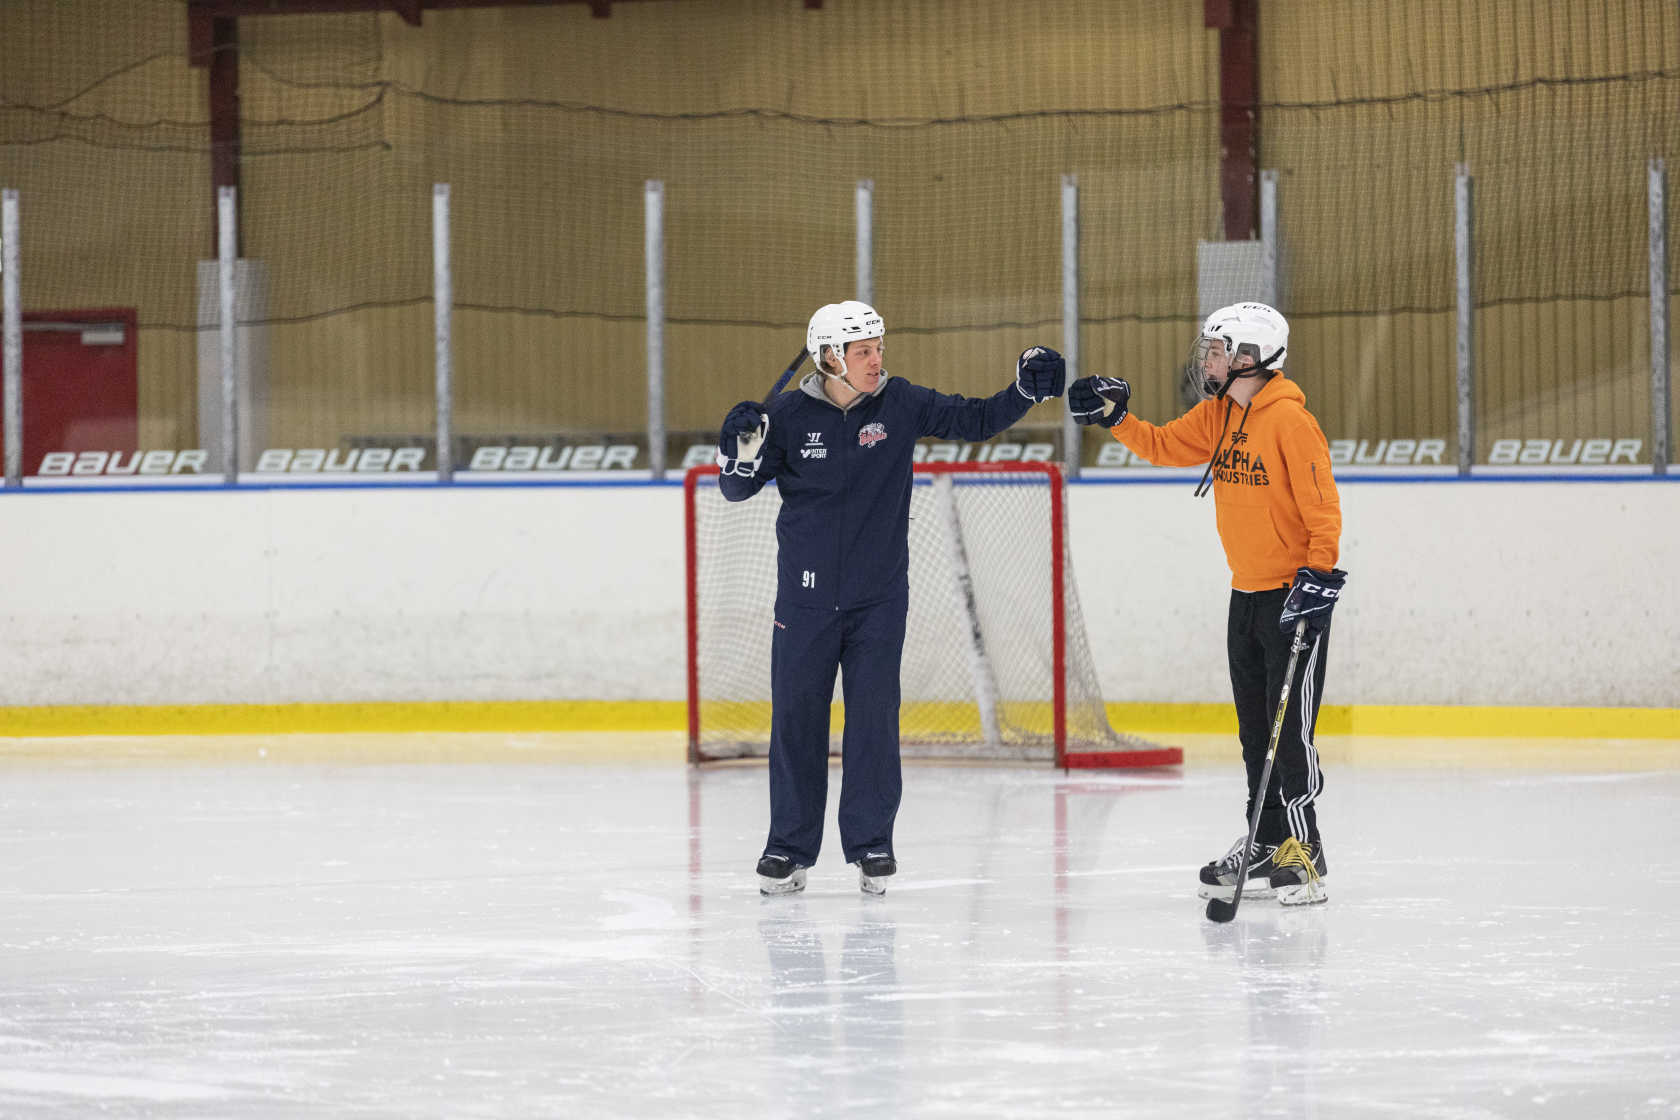 Två personer står på isen framför ett hockeymål. En av dem har en hockeyklubba. De slår ihop sina knogar i en hälsning. 